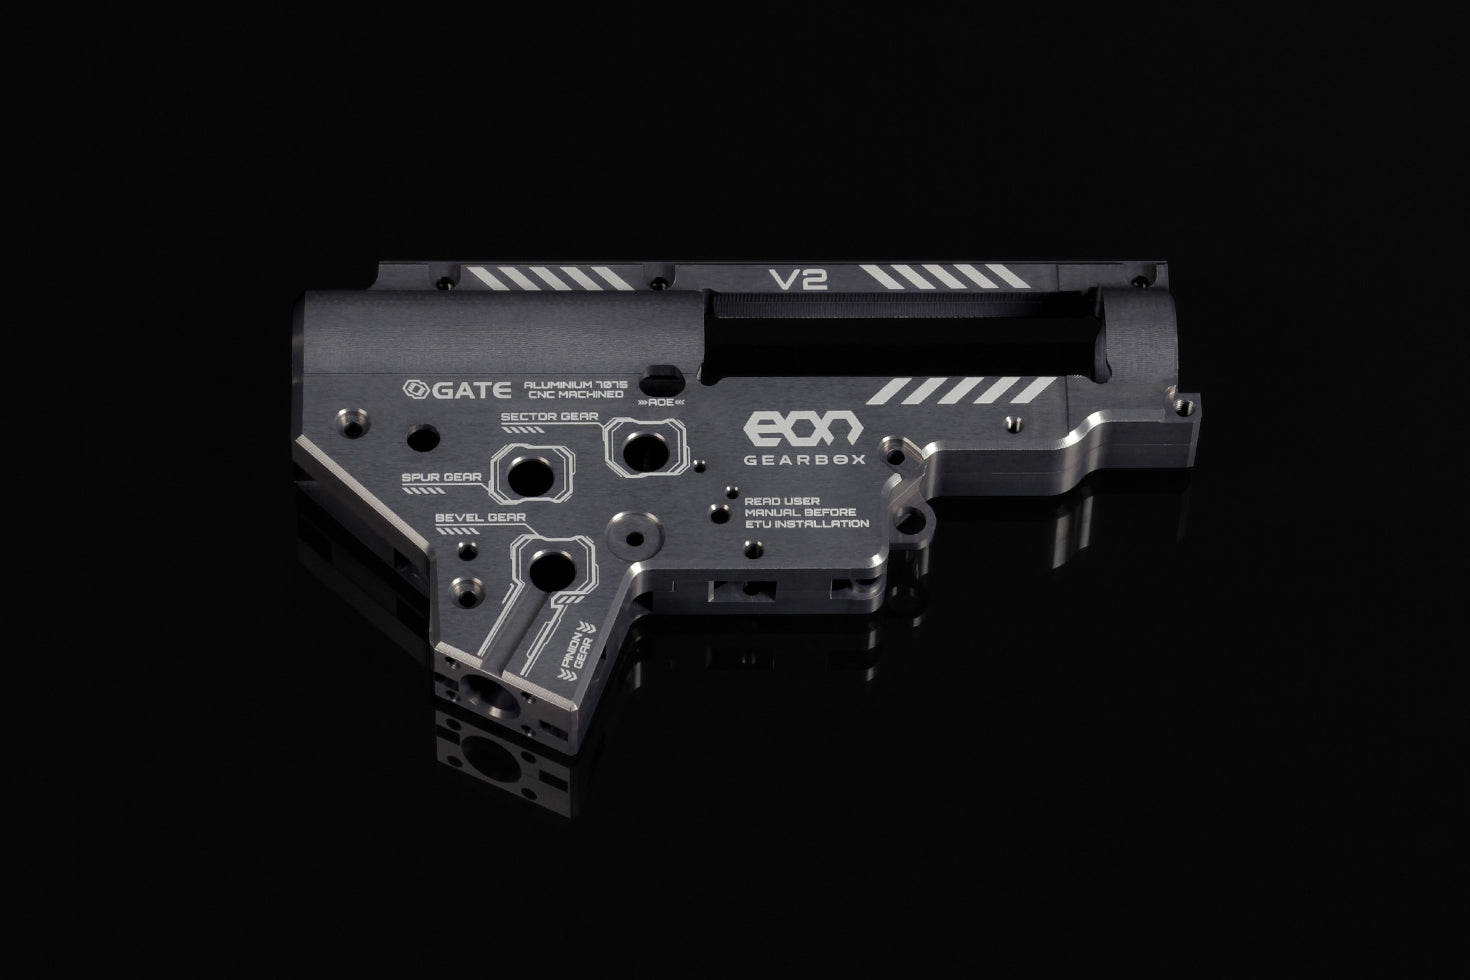 EON V2 Gearbox rev. 2 [CNC] - Titanium / Silver – GATE Enterprise USD